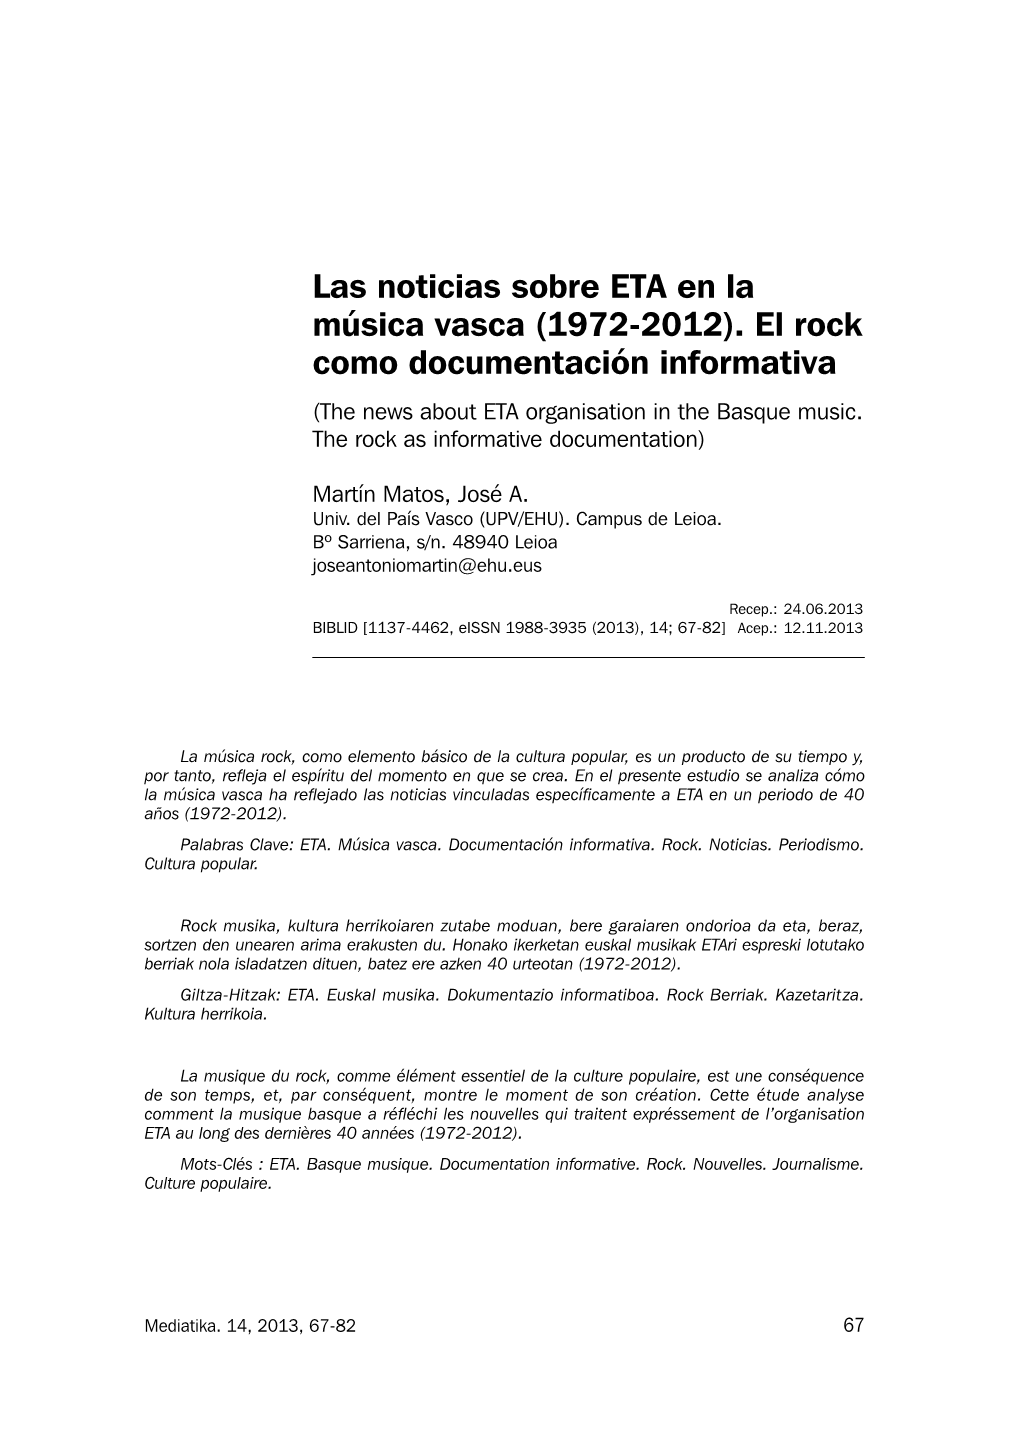 Las Noticias Sobre ETA En La Música Vasca (1972-2012). El Rock Como Documentación Informativa (The News About ETA Organisation in the Basque Music